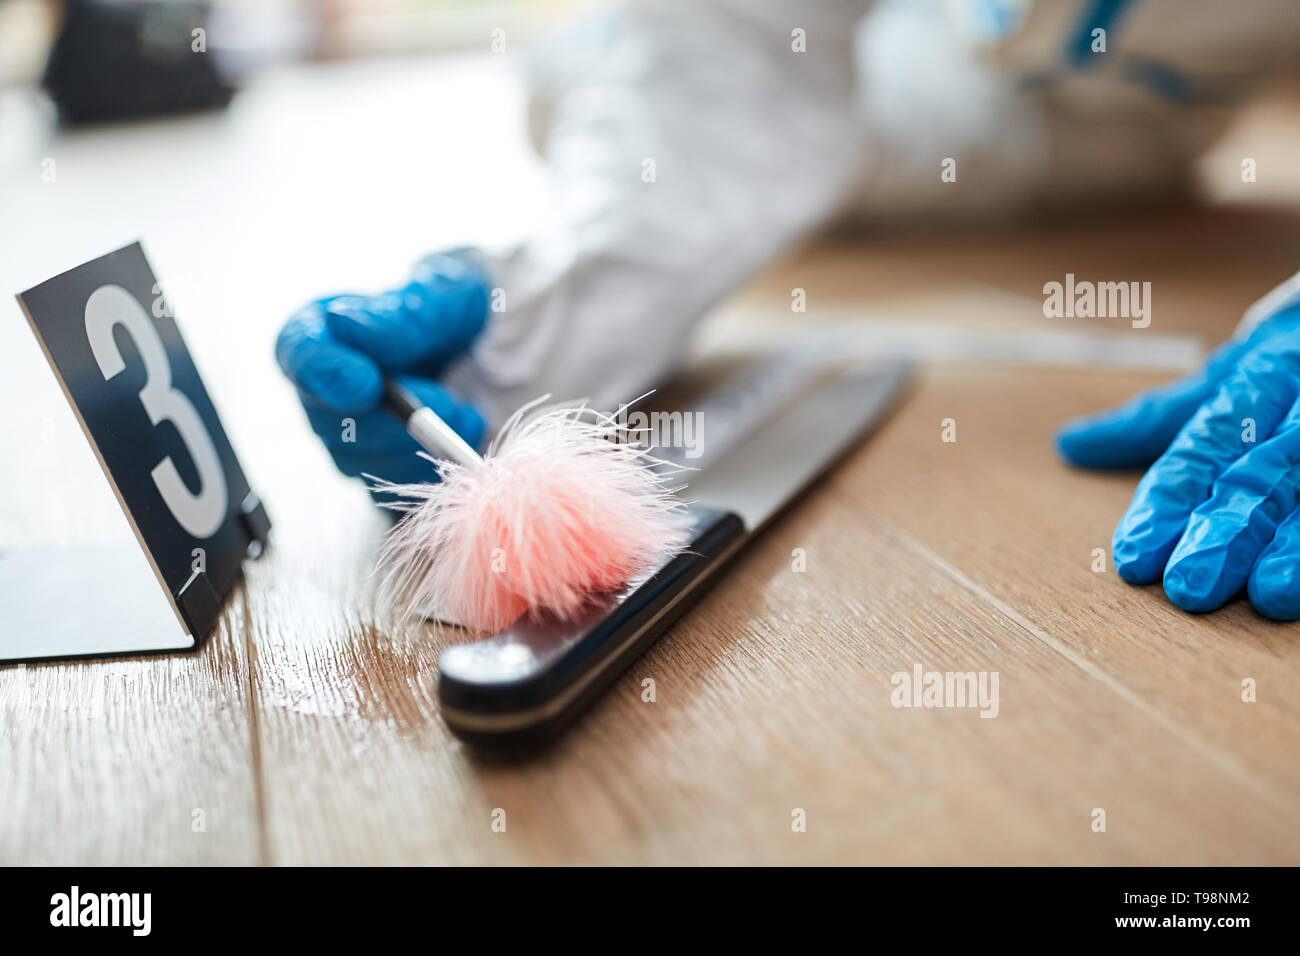 Forensic scientist looks for fingerprint on knife at a crime scene Stock Photo